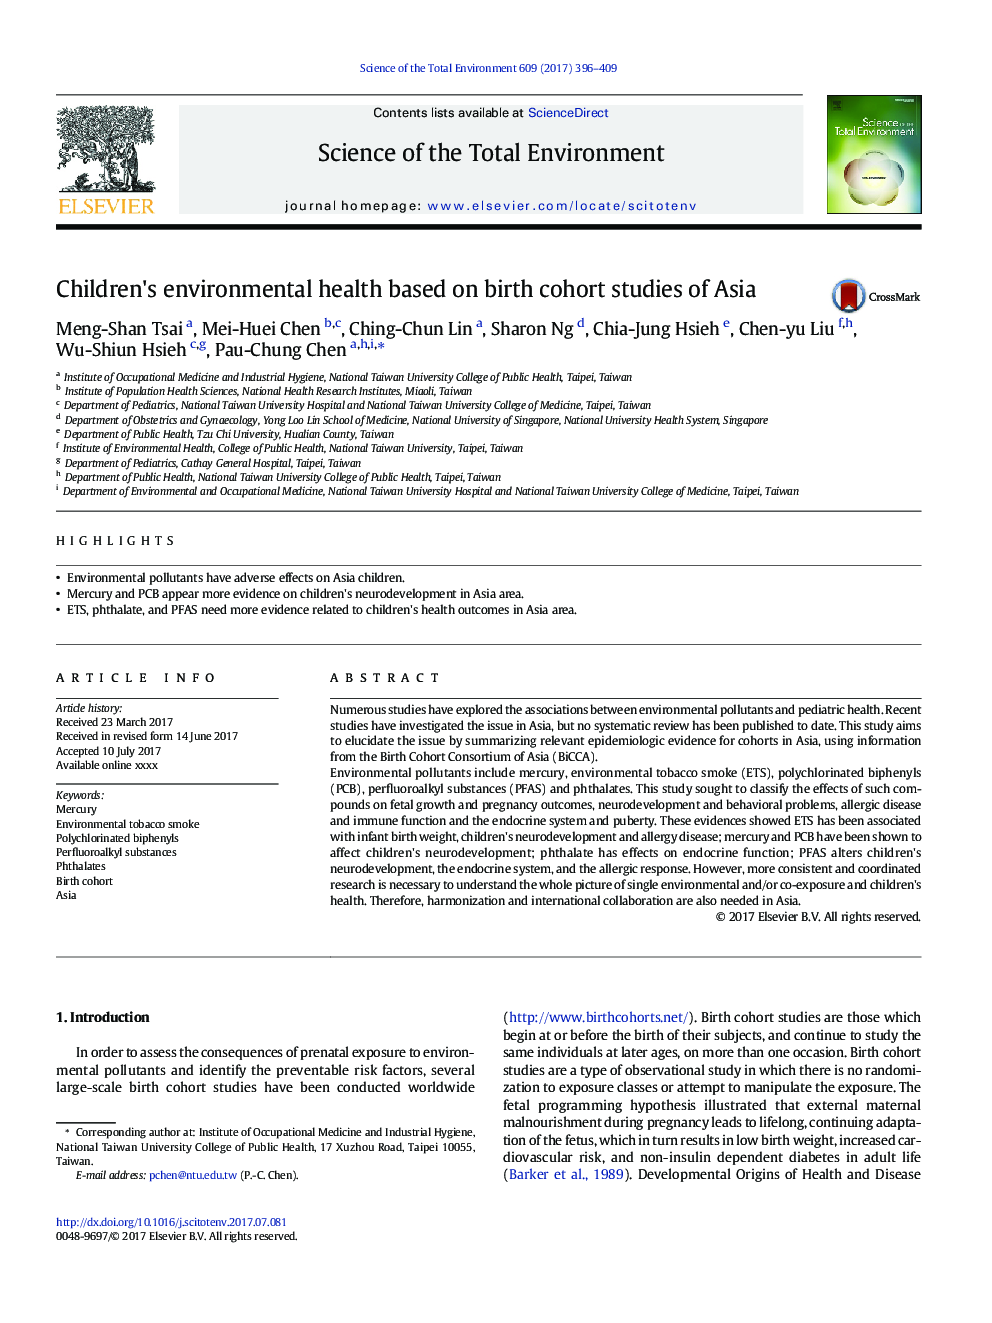 سلامت محیط زیست کودکان براساس مطالعات مربوط به تولد همسر در آسیا است 